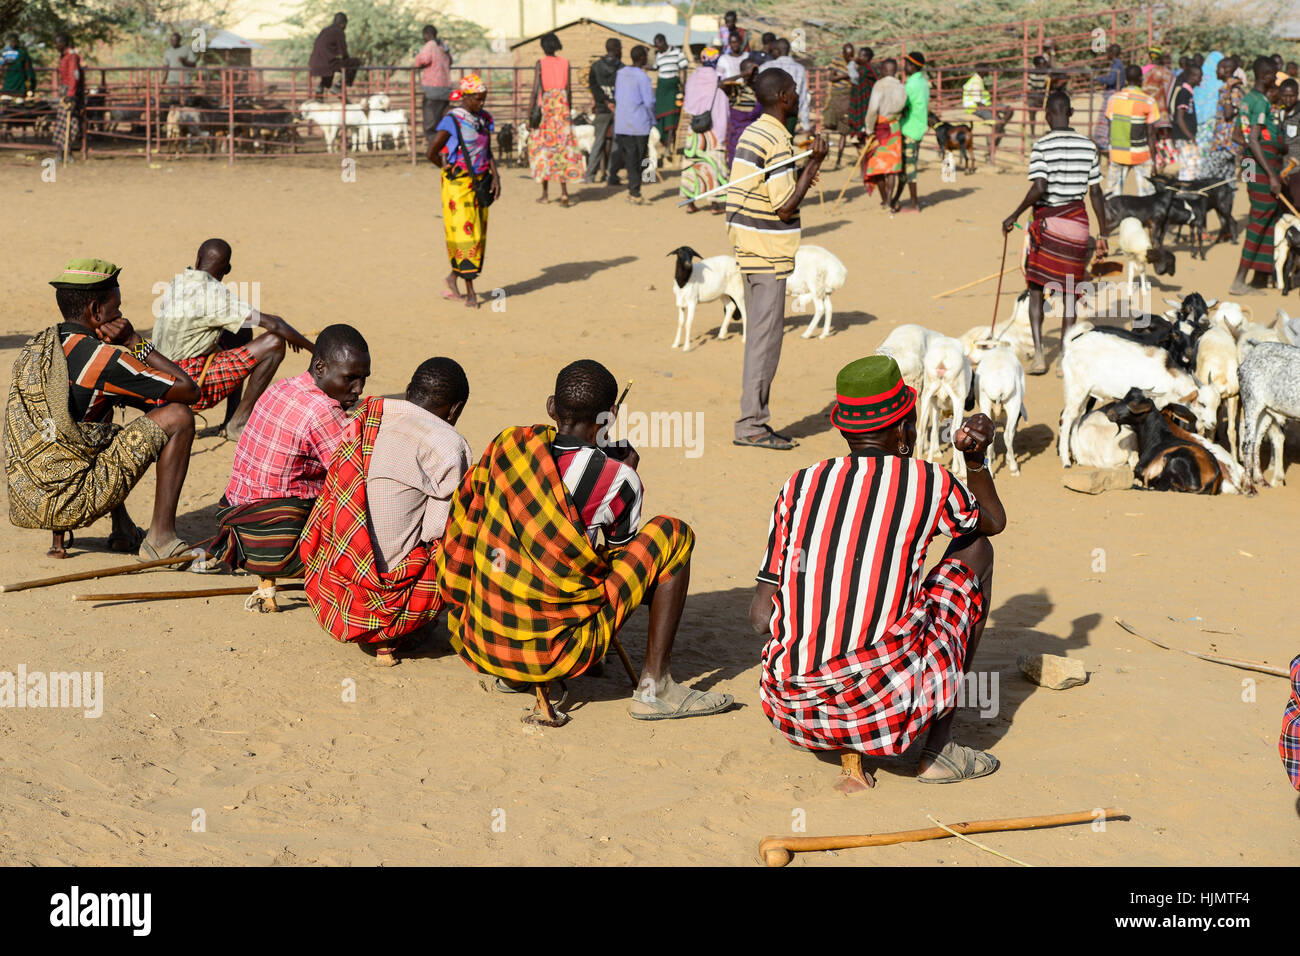 KENIA Turkana, Lodwar, cattle market, herder buy and sell goats, man sit on their small wooden chairs / Turkana mit Ziegen auf dem Viehmarkt, Turkana Maenner sitzen auf kleinen Holz Hockern Stock Photo